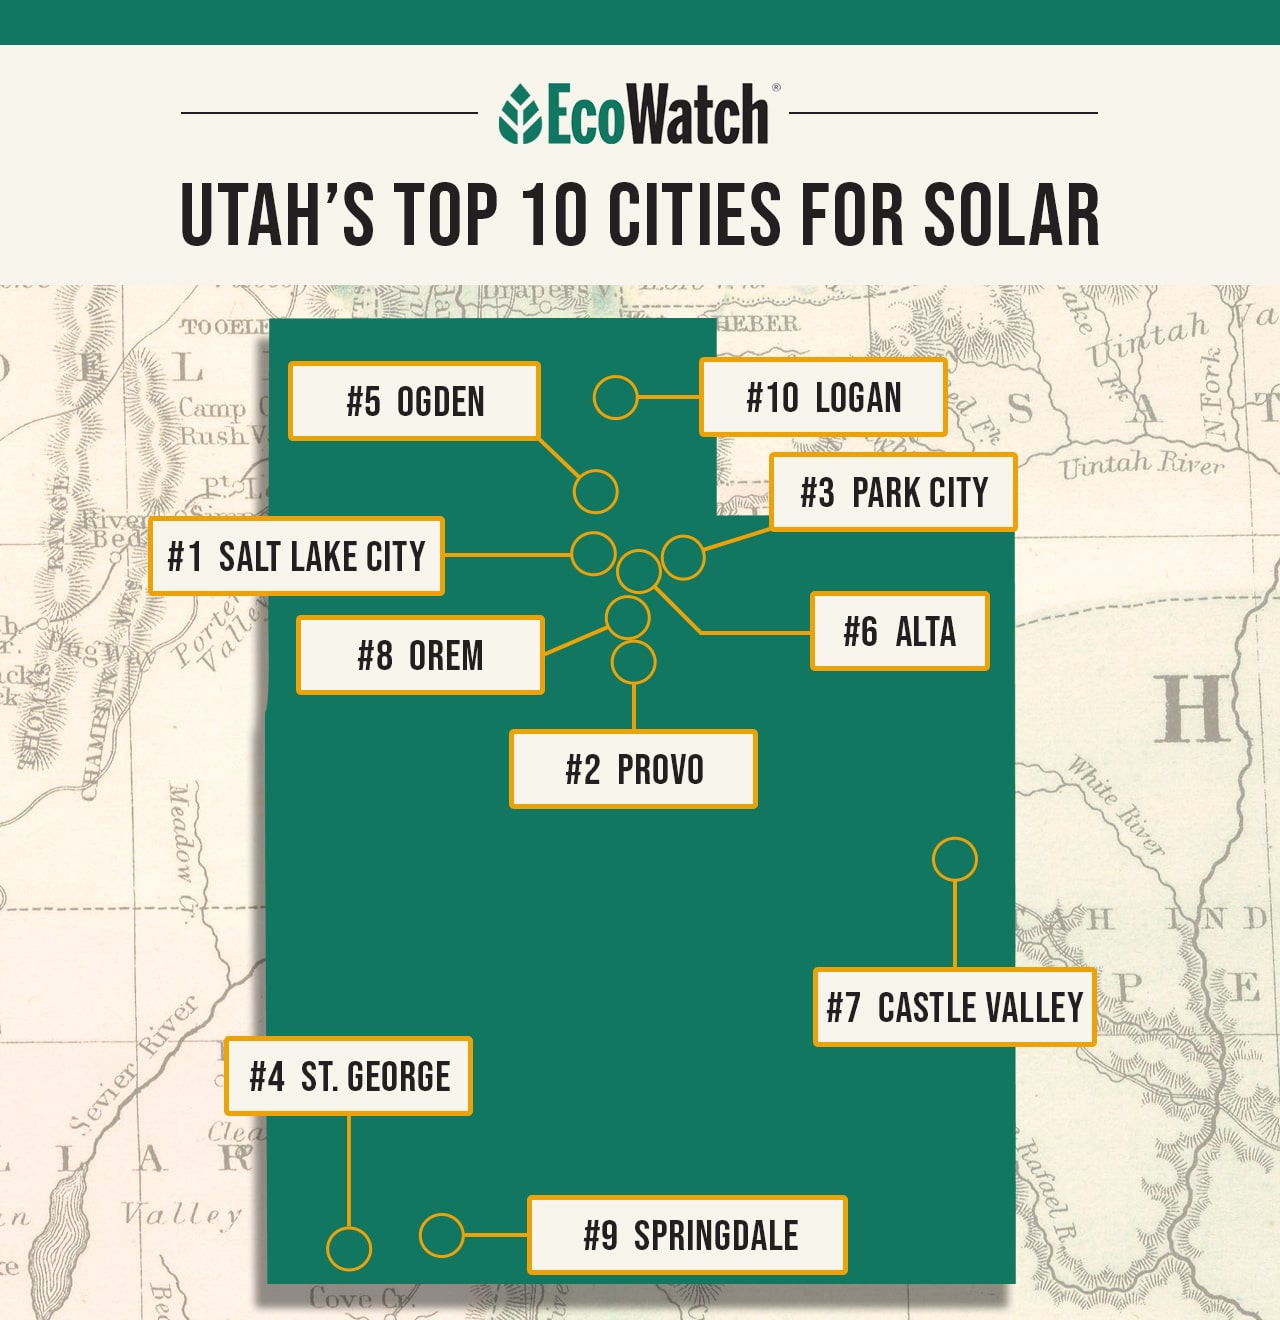 Utah’s top 10 cities for solar